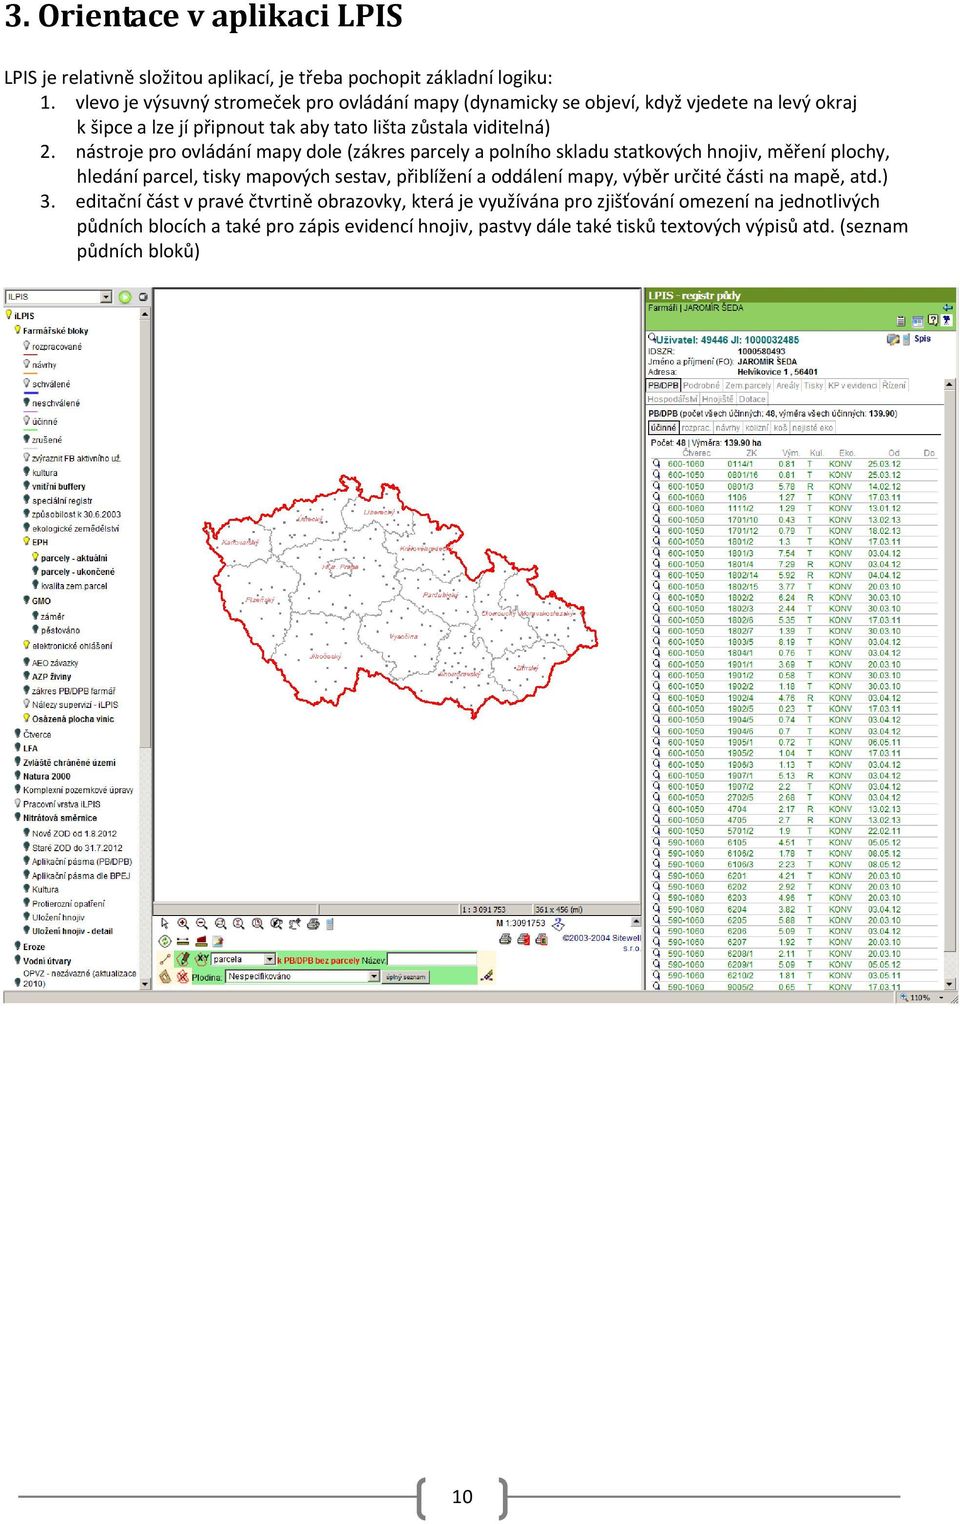 nástroje pro ovládání mapy dole (zákres parcely a polního skladu statkových hnojiv, měření plochy, hledání parcel, tisky mapových sestav, přiblížení a oddálení mapy, výběr